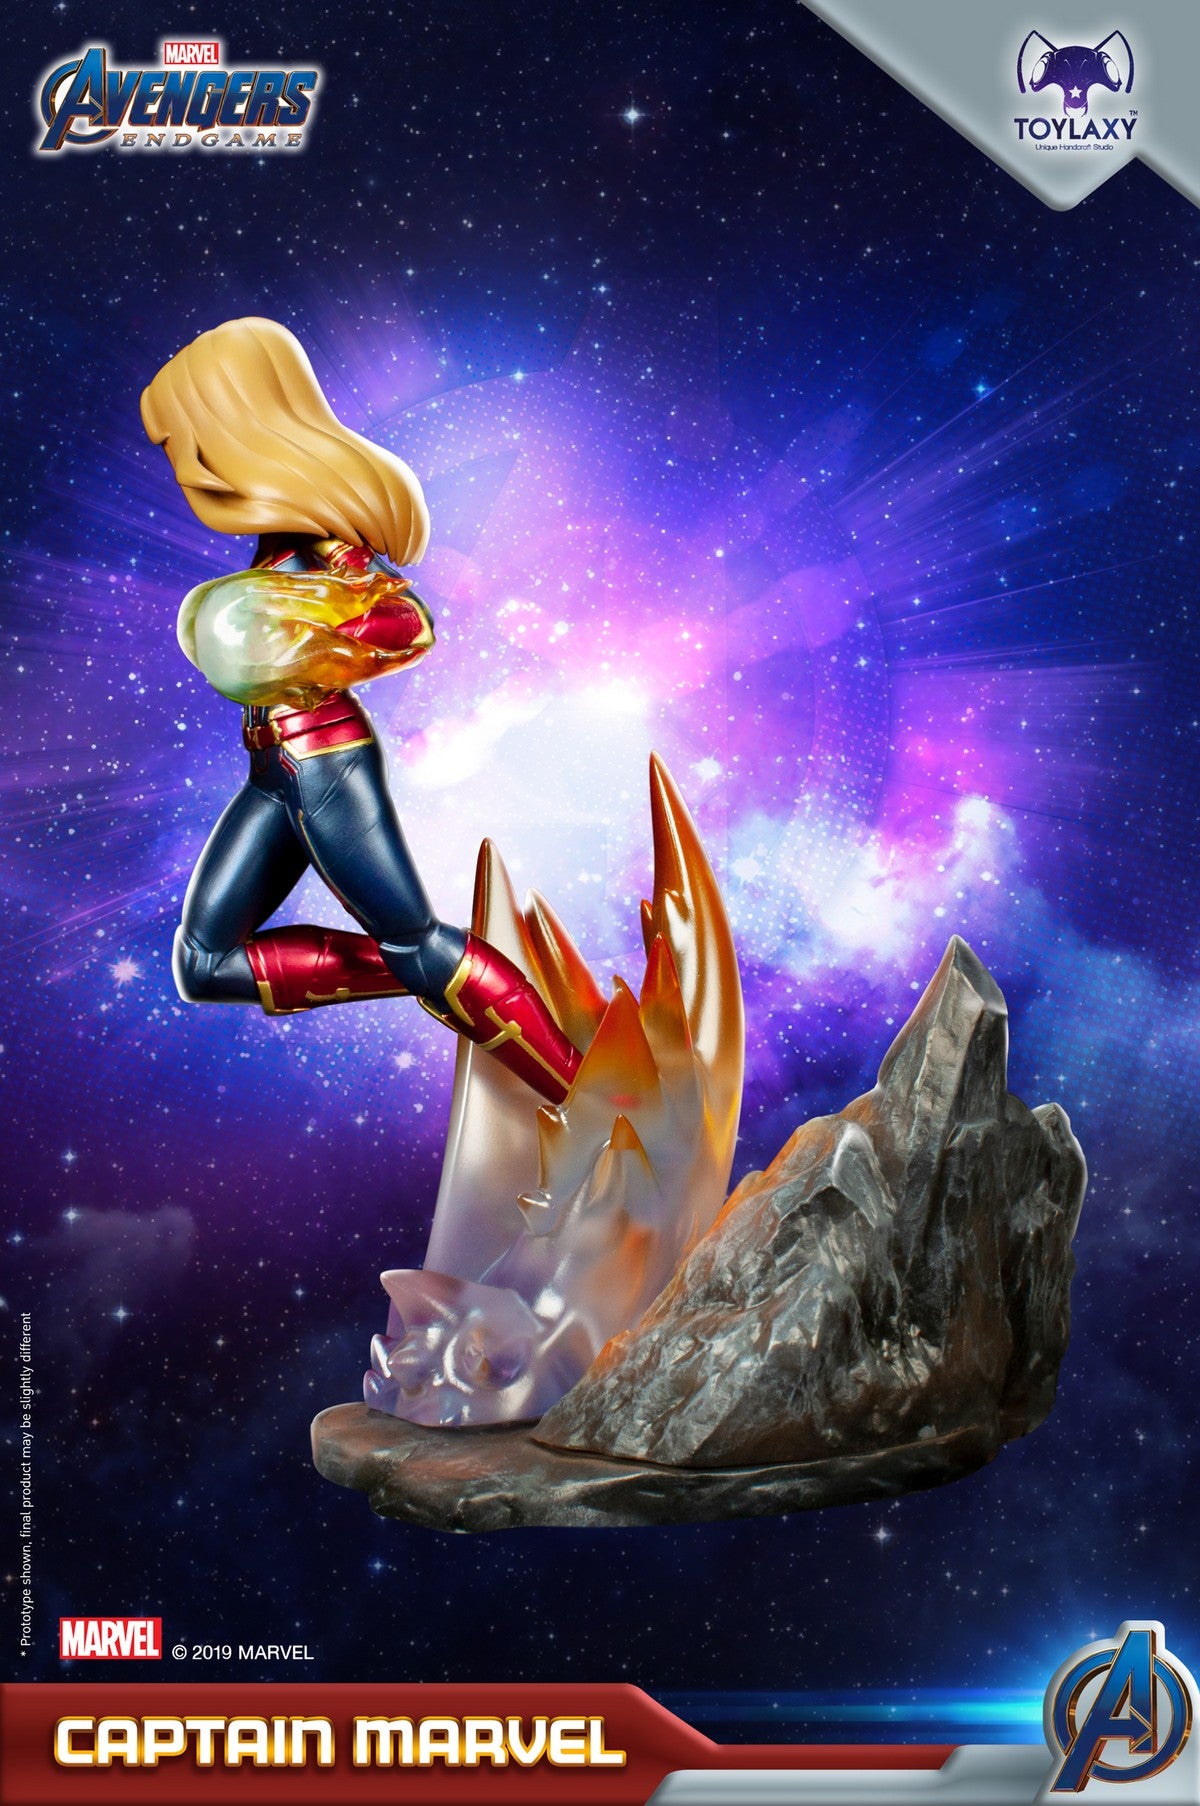 漫威復仇者聯盟：Marvel隊長正版模型手辦人偶玩具 Marvel's Avengers: Endgame Premium PVC Captain Marvel official figure toy wave 2  side